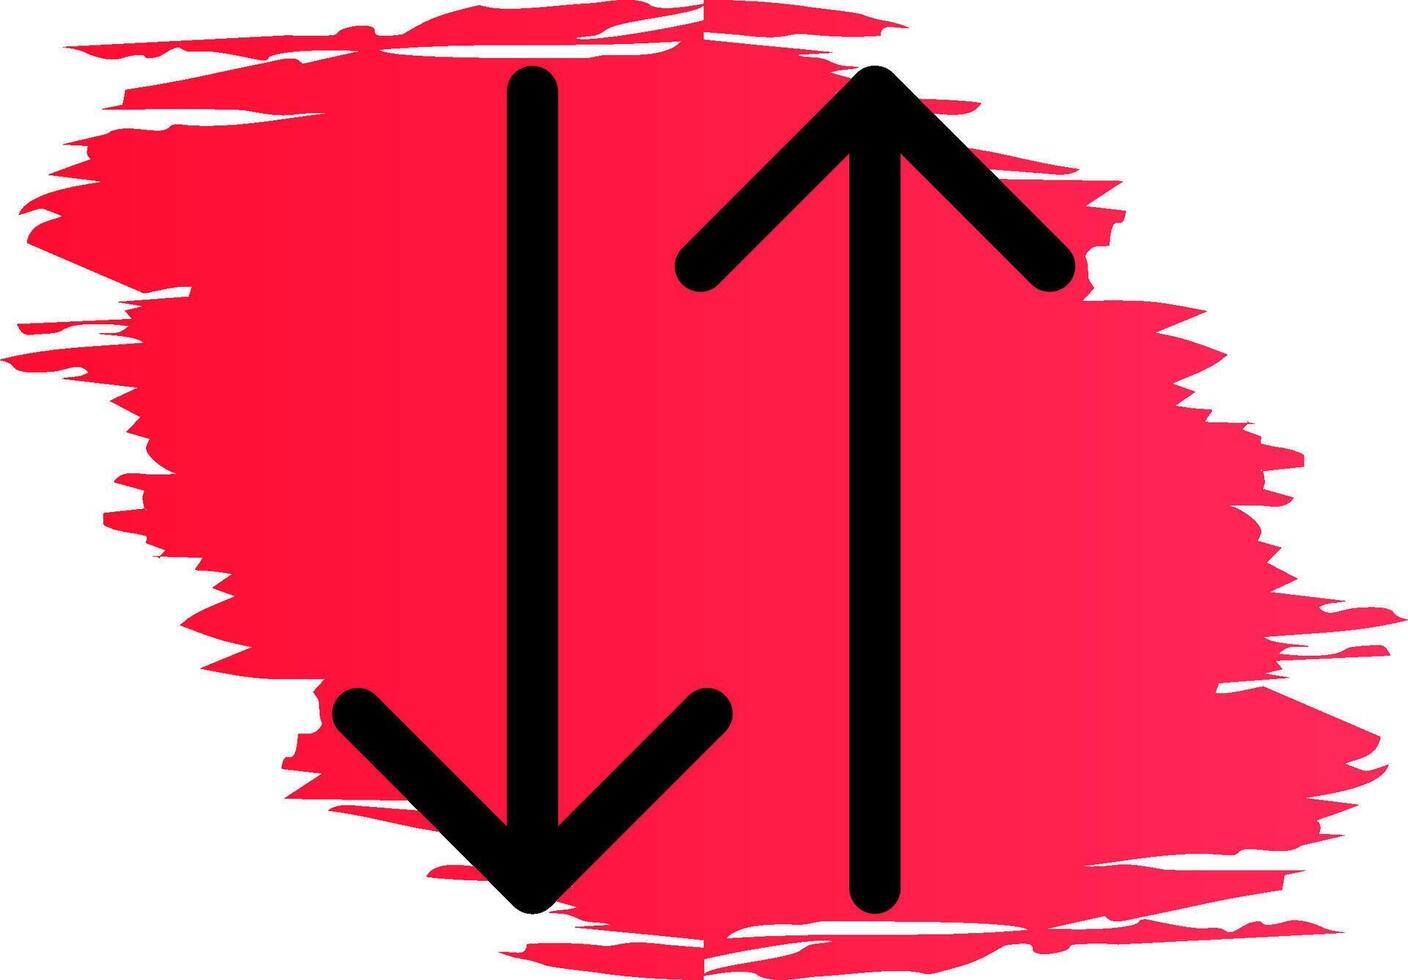 Double Arrow Creative Icon Design vector